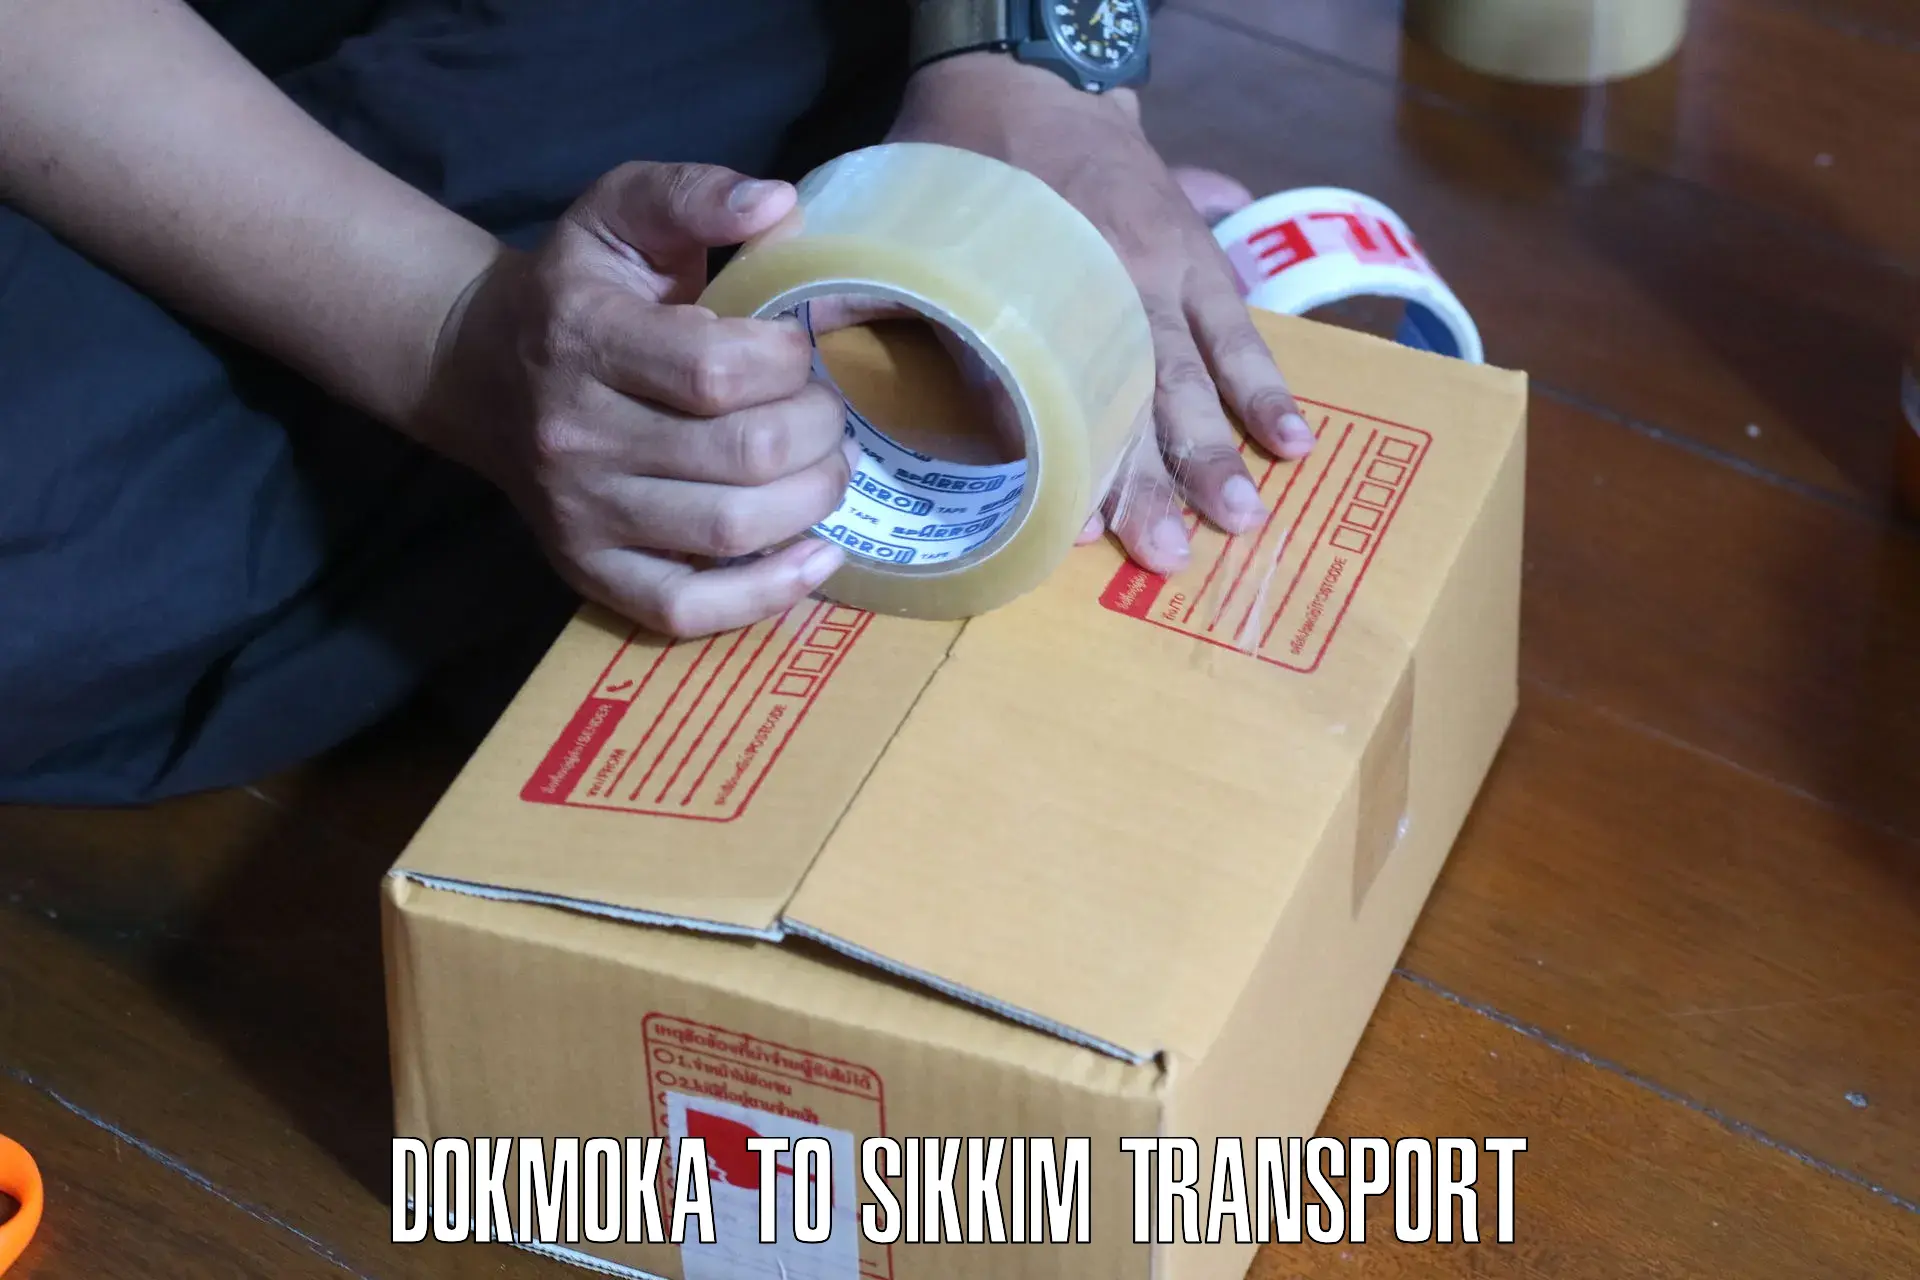 Shipping partner Dokmoka to West Sikkim